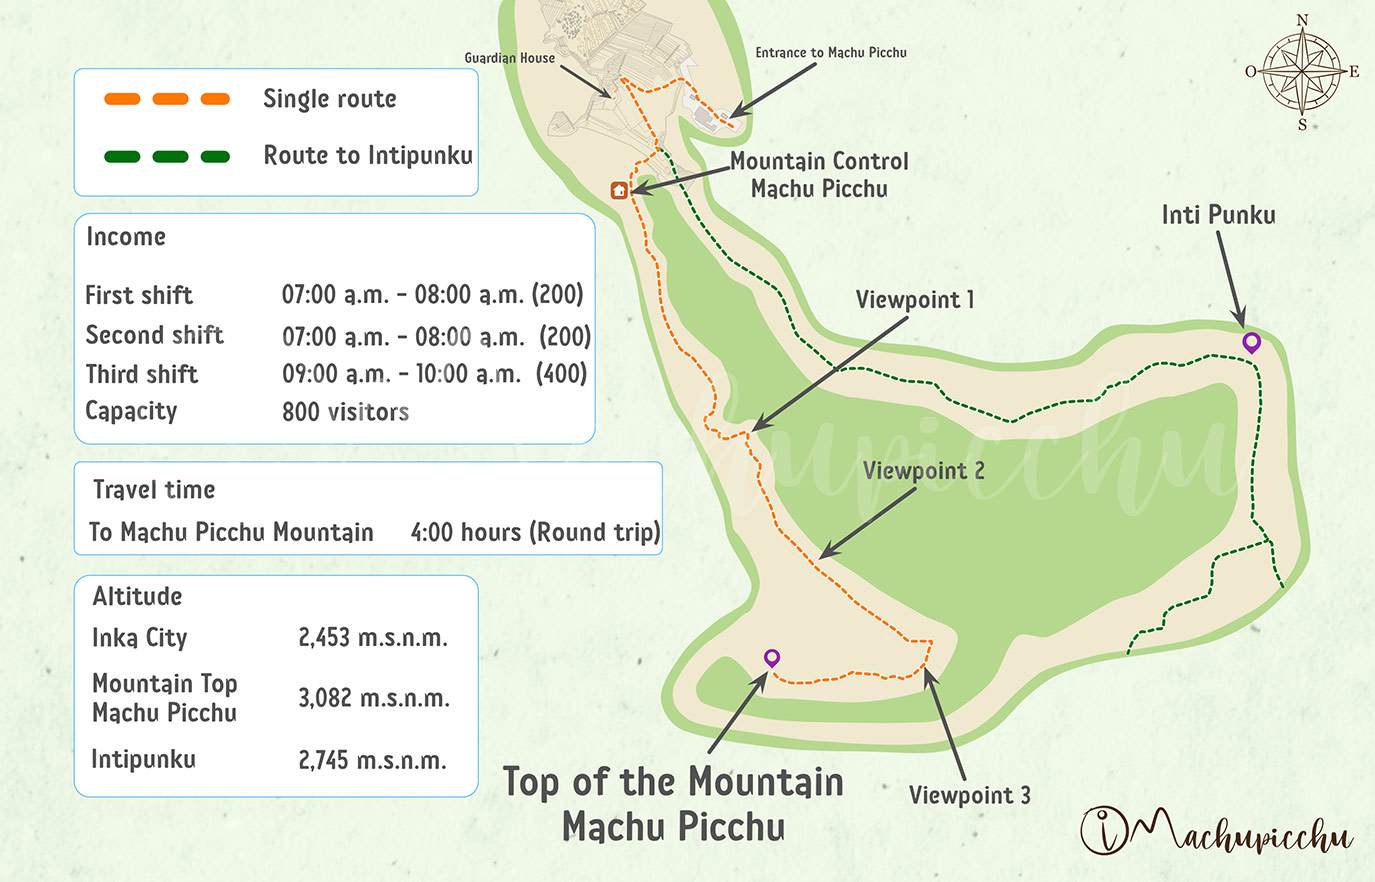 Machu Picchu Mountain tour map